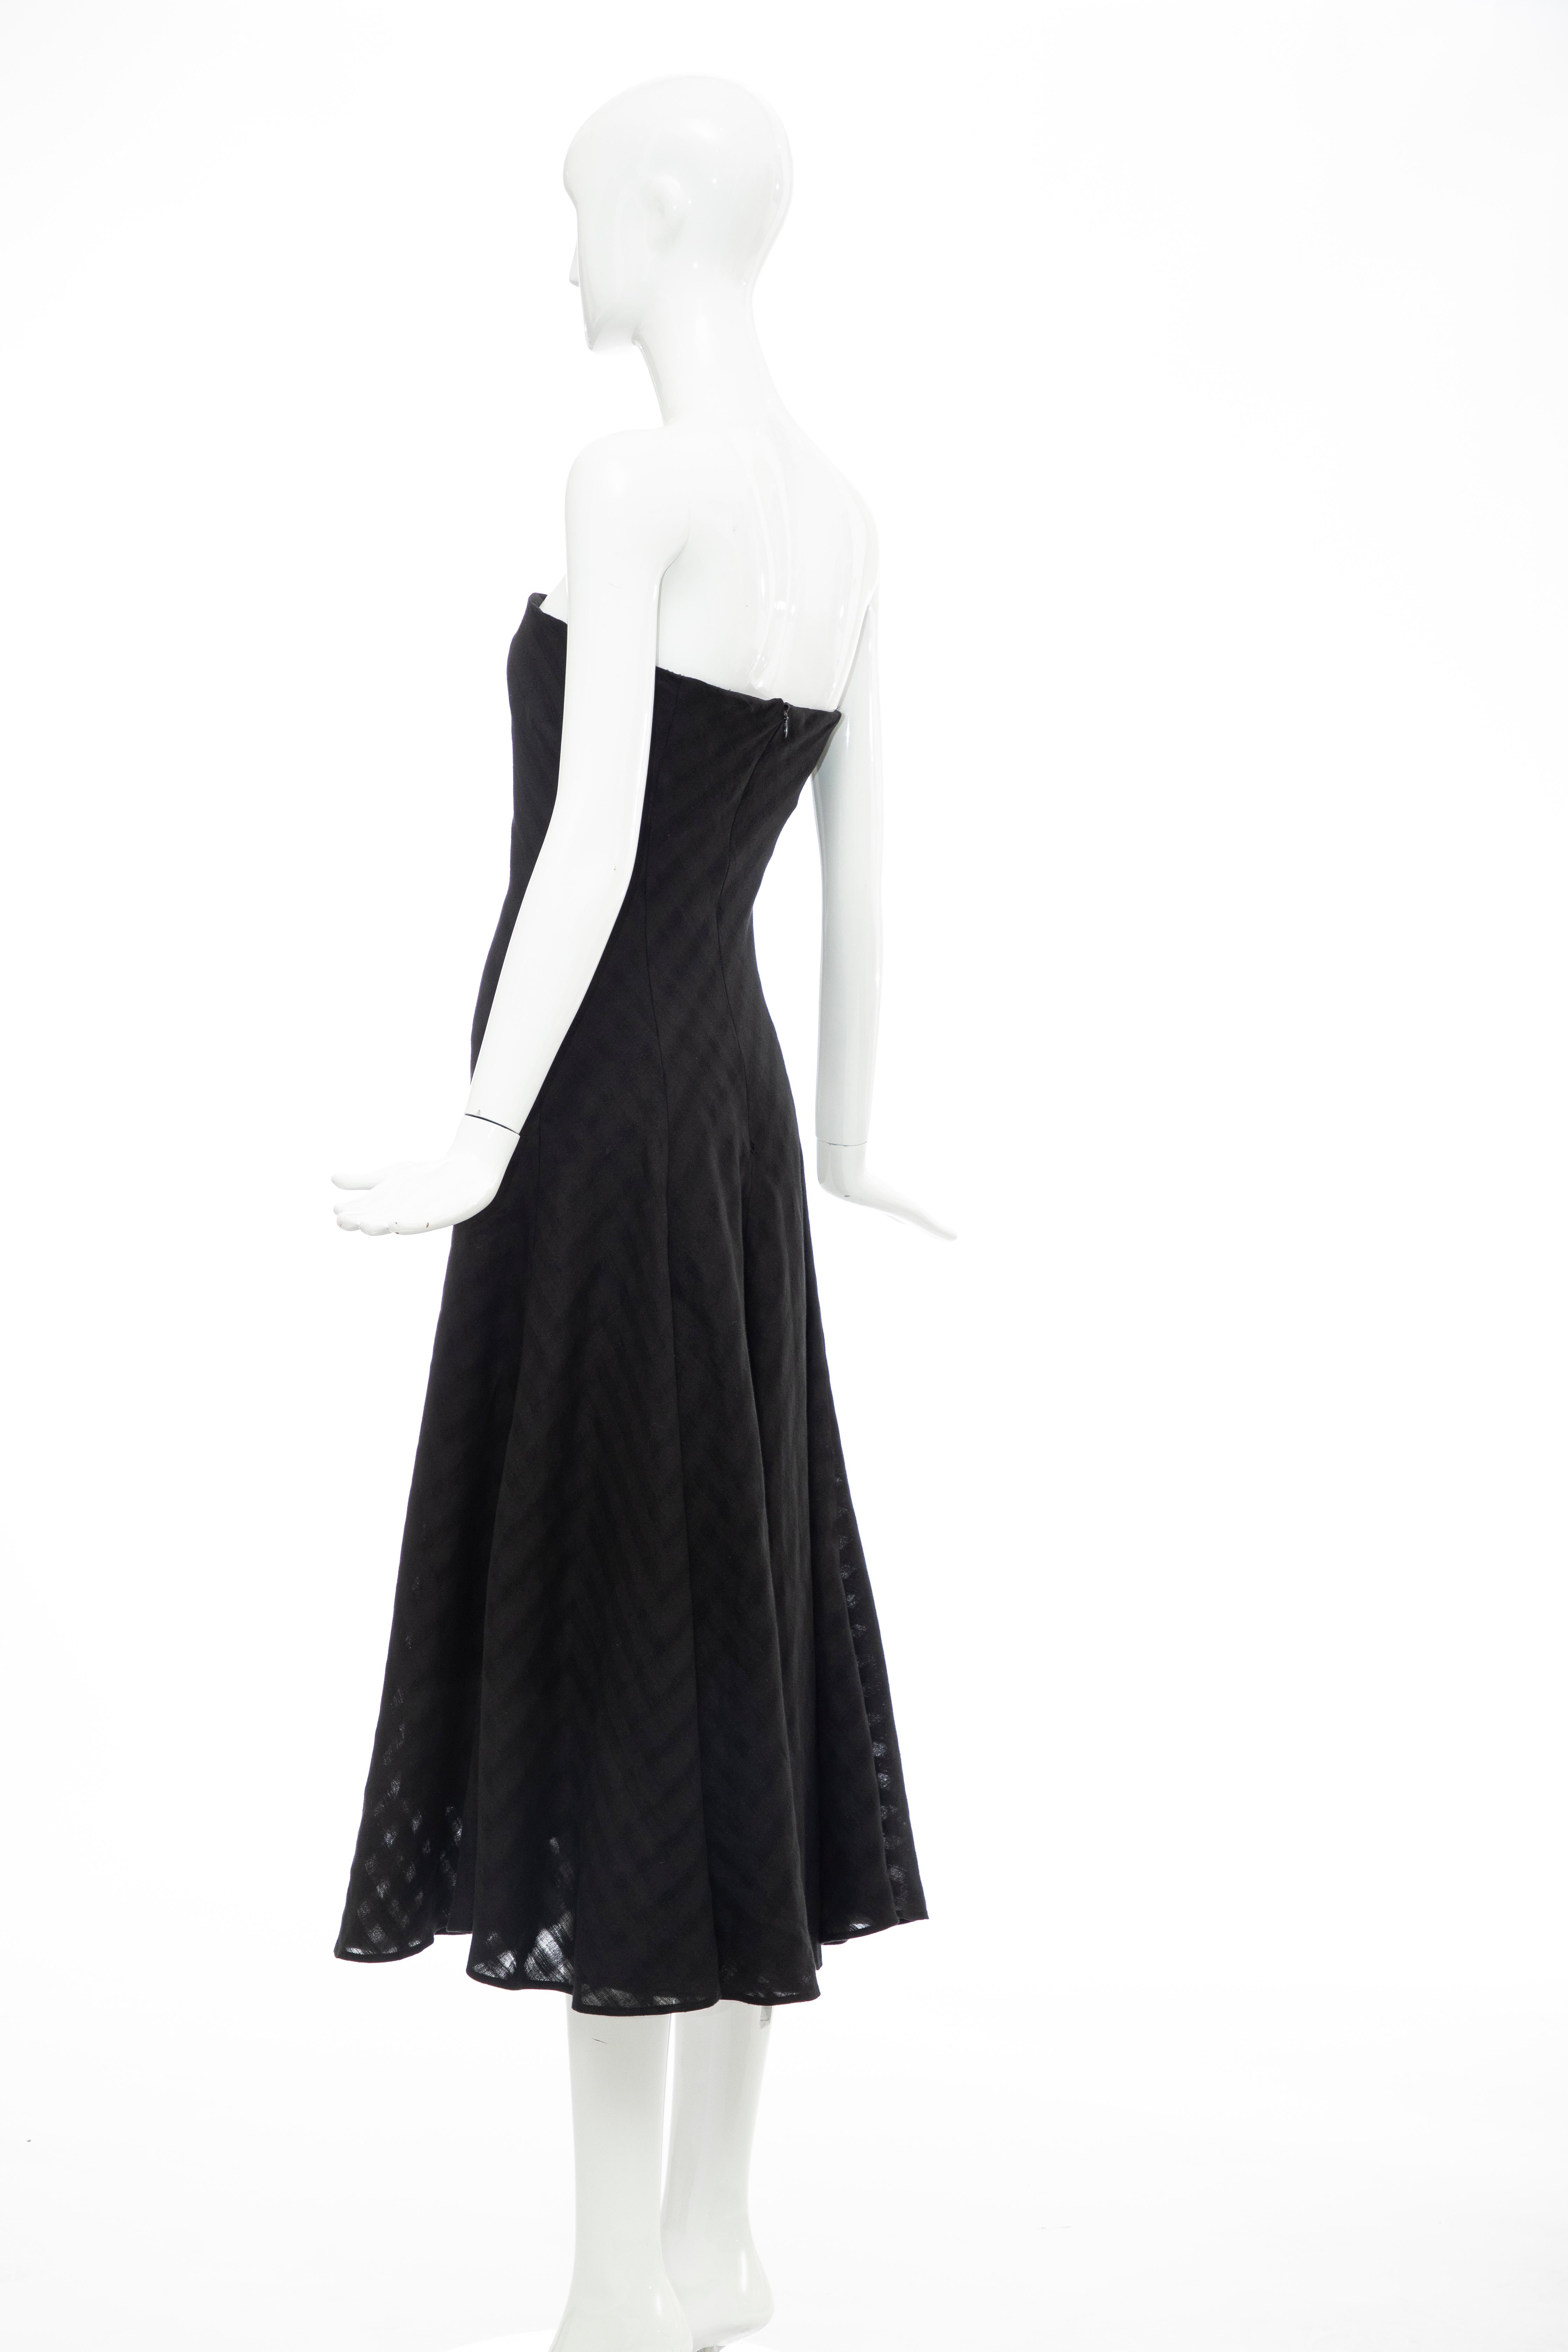 Olivier Theyskens Runway Black Linen Dress, Spring 2000 For Sale 4